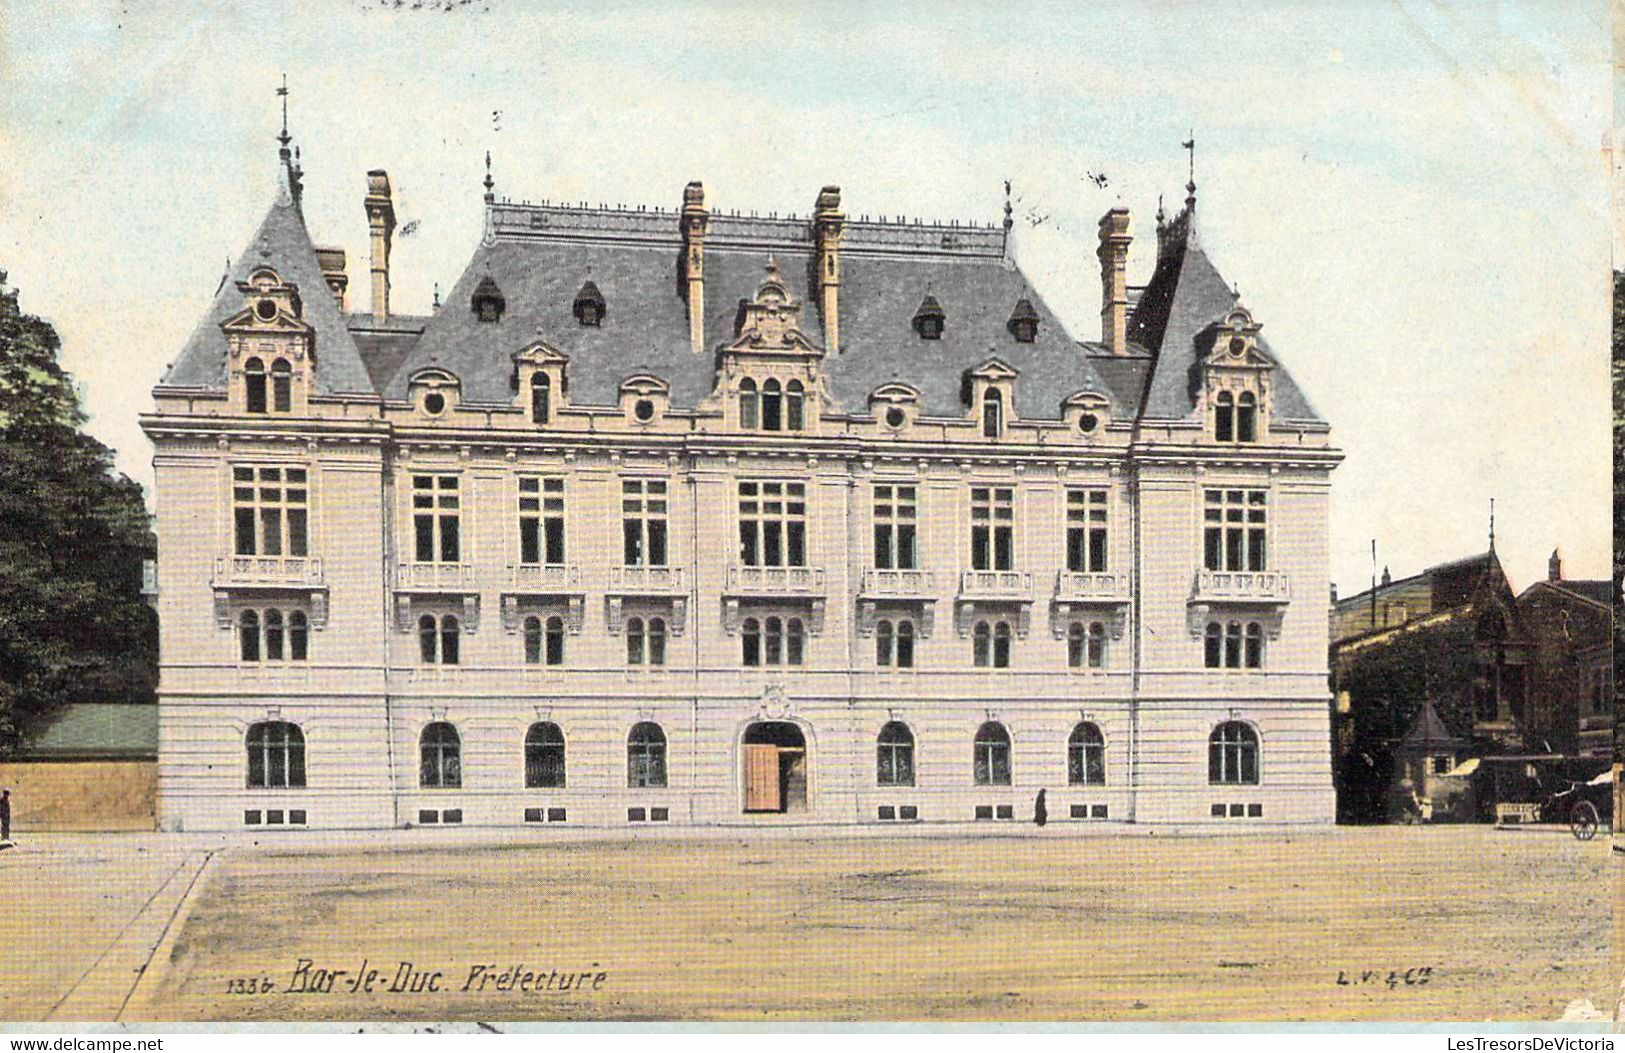 CPA France - Bar Le Duc - Prefecture - Animé - Charrette - Architecture Néo Classique - Colorisée - Oblitérée 1907 - Bar Le Duc